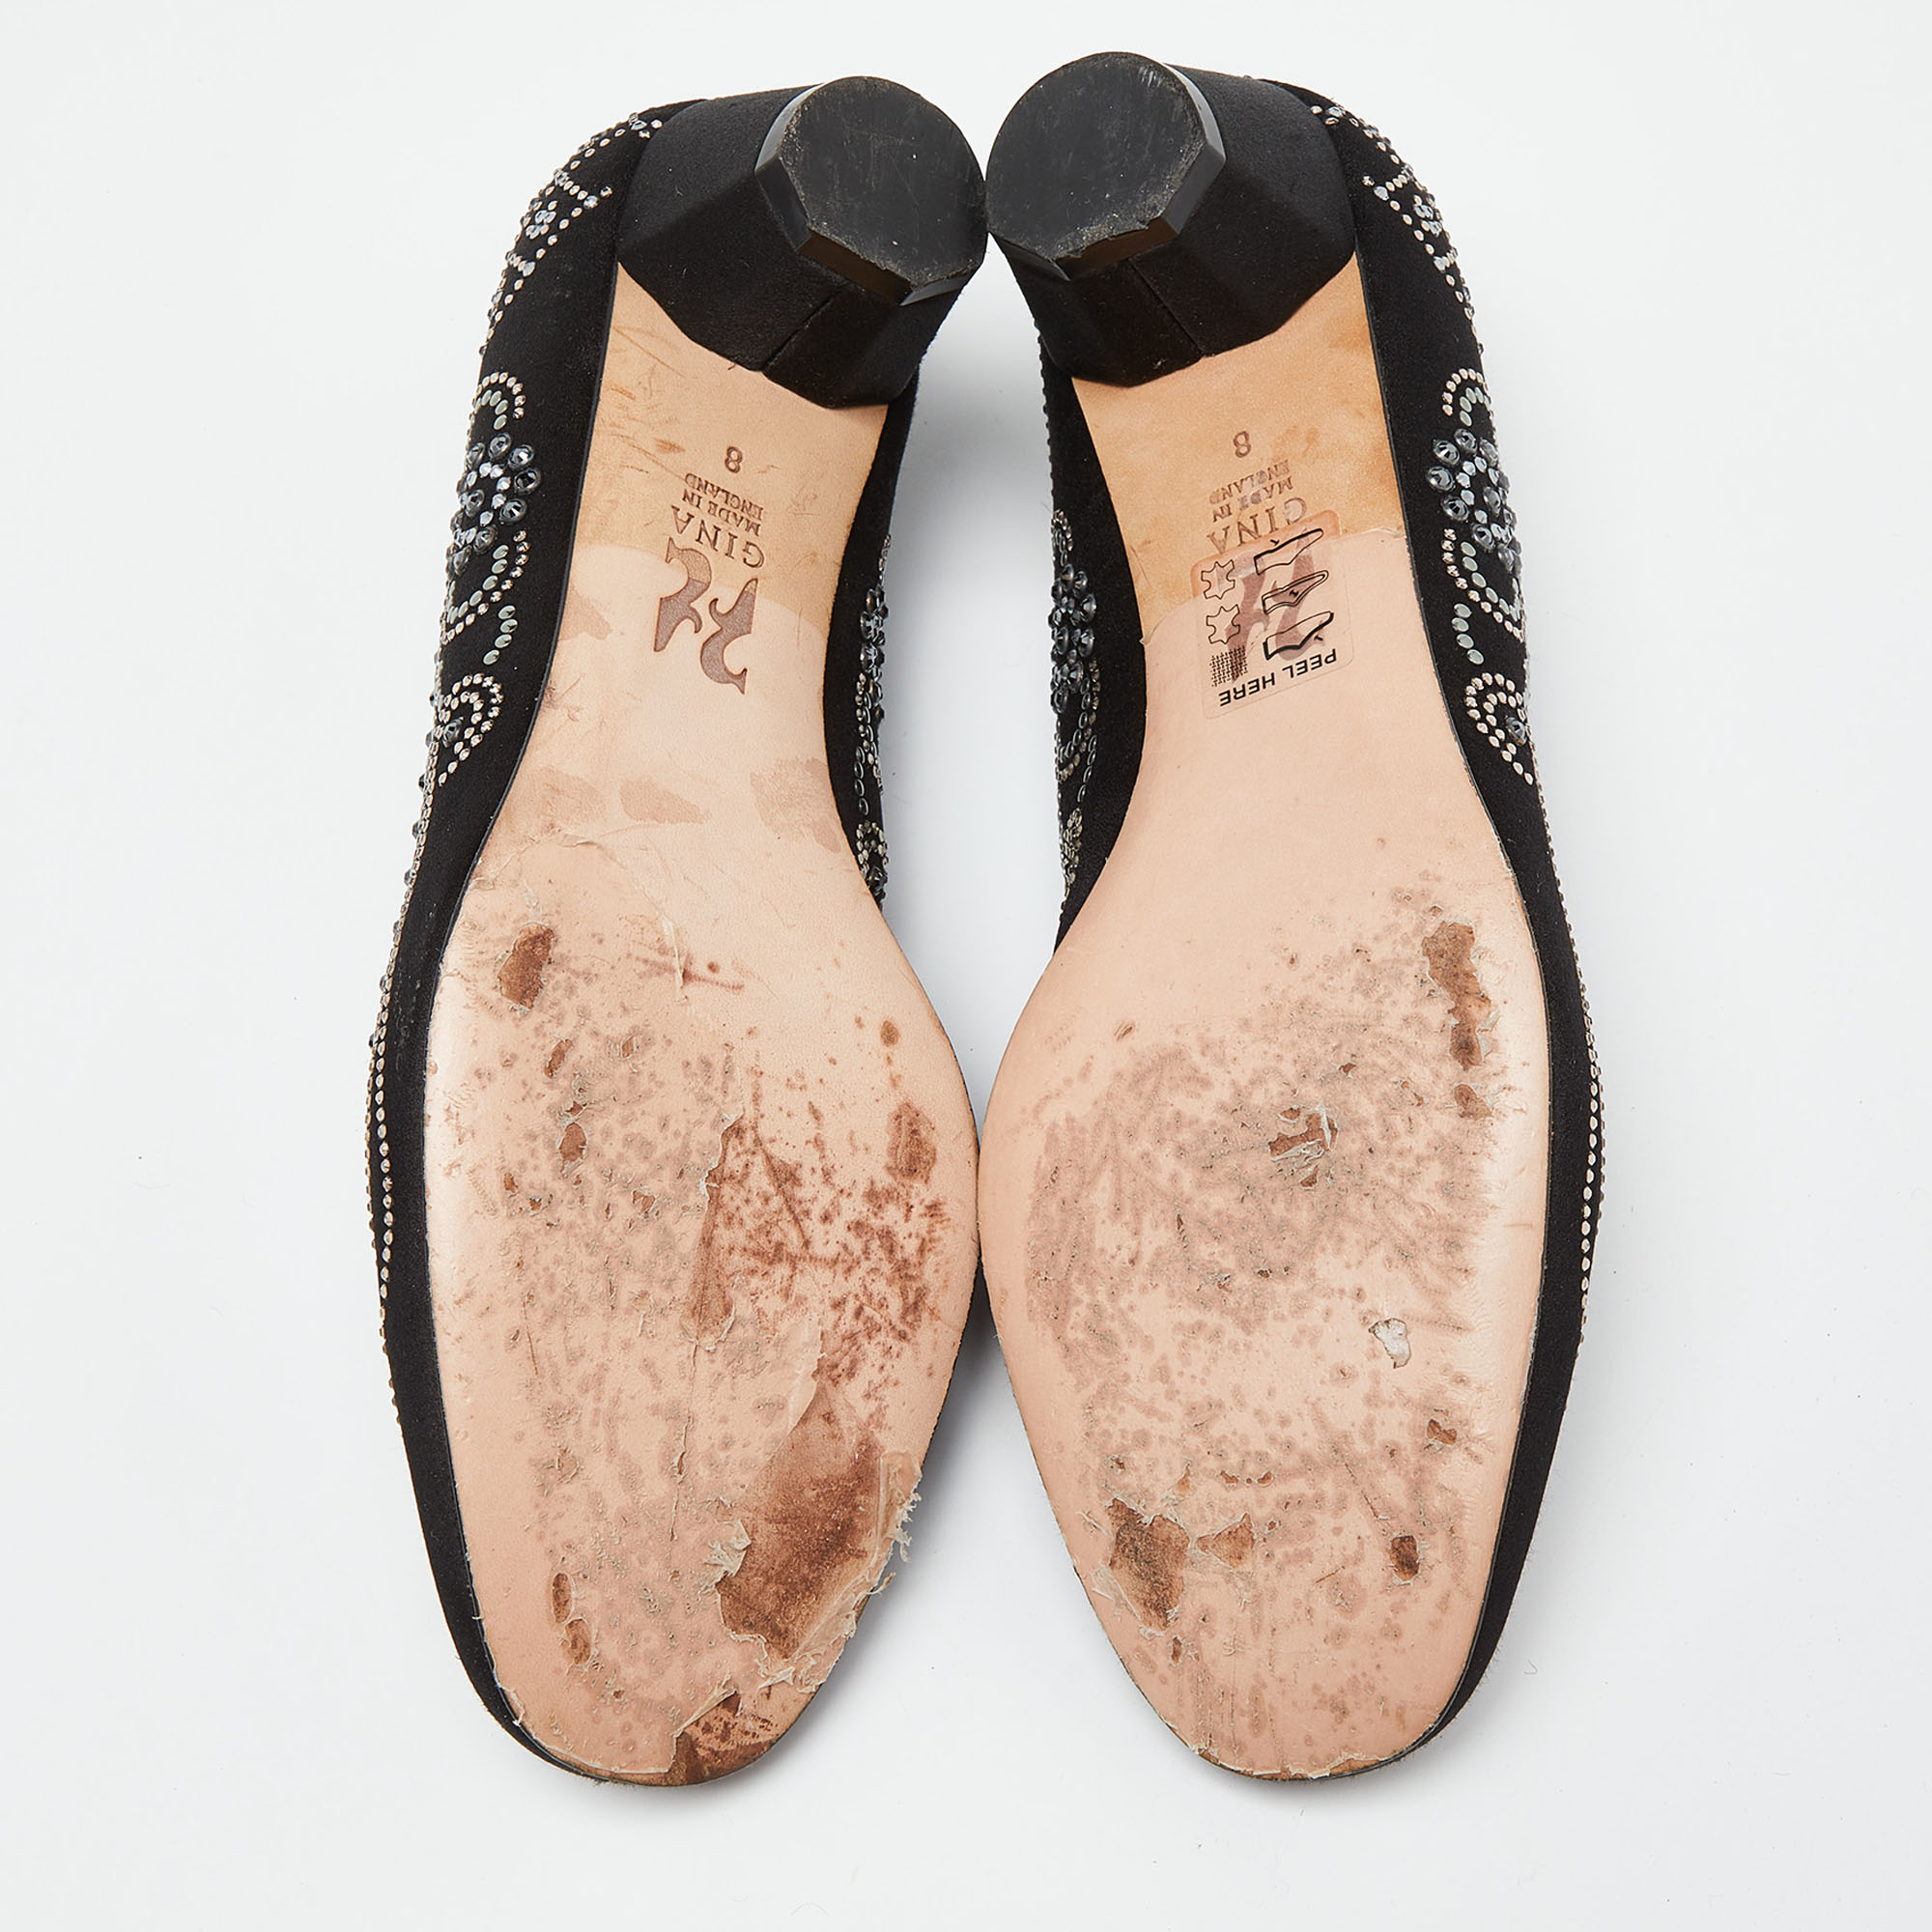 Gina Black Satin Crystal Embellished Ballet Flats Size 41